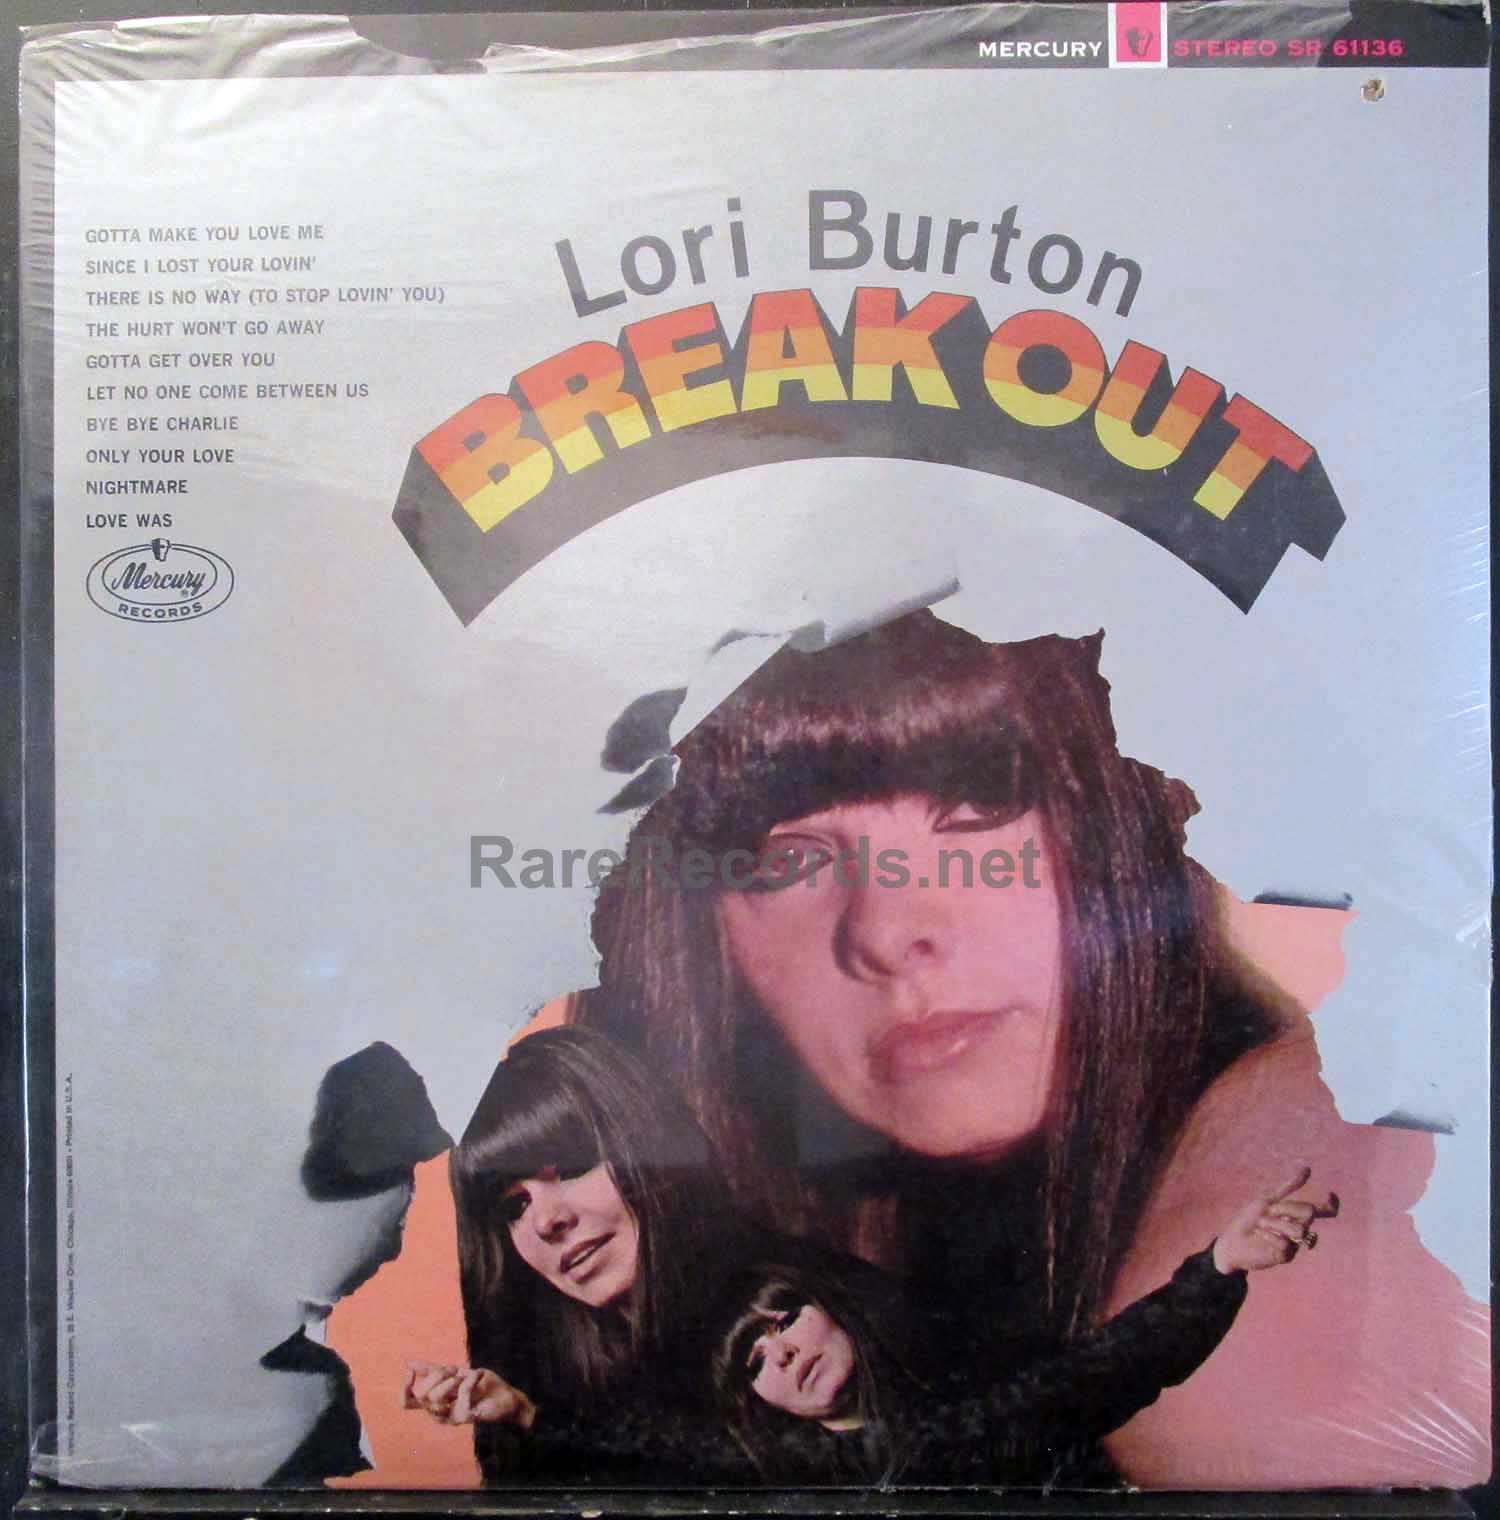 Lori Burton - Breakout